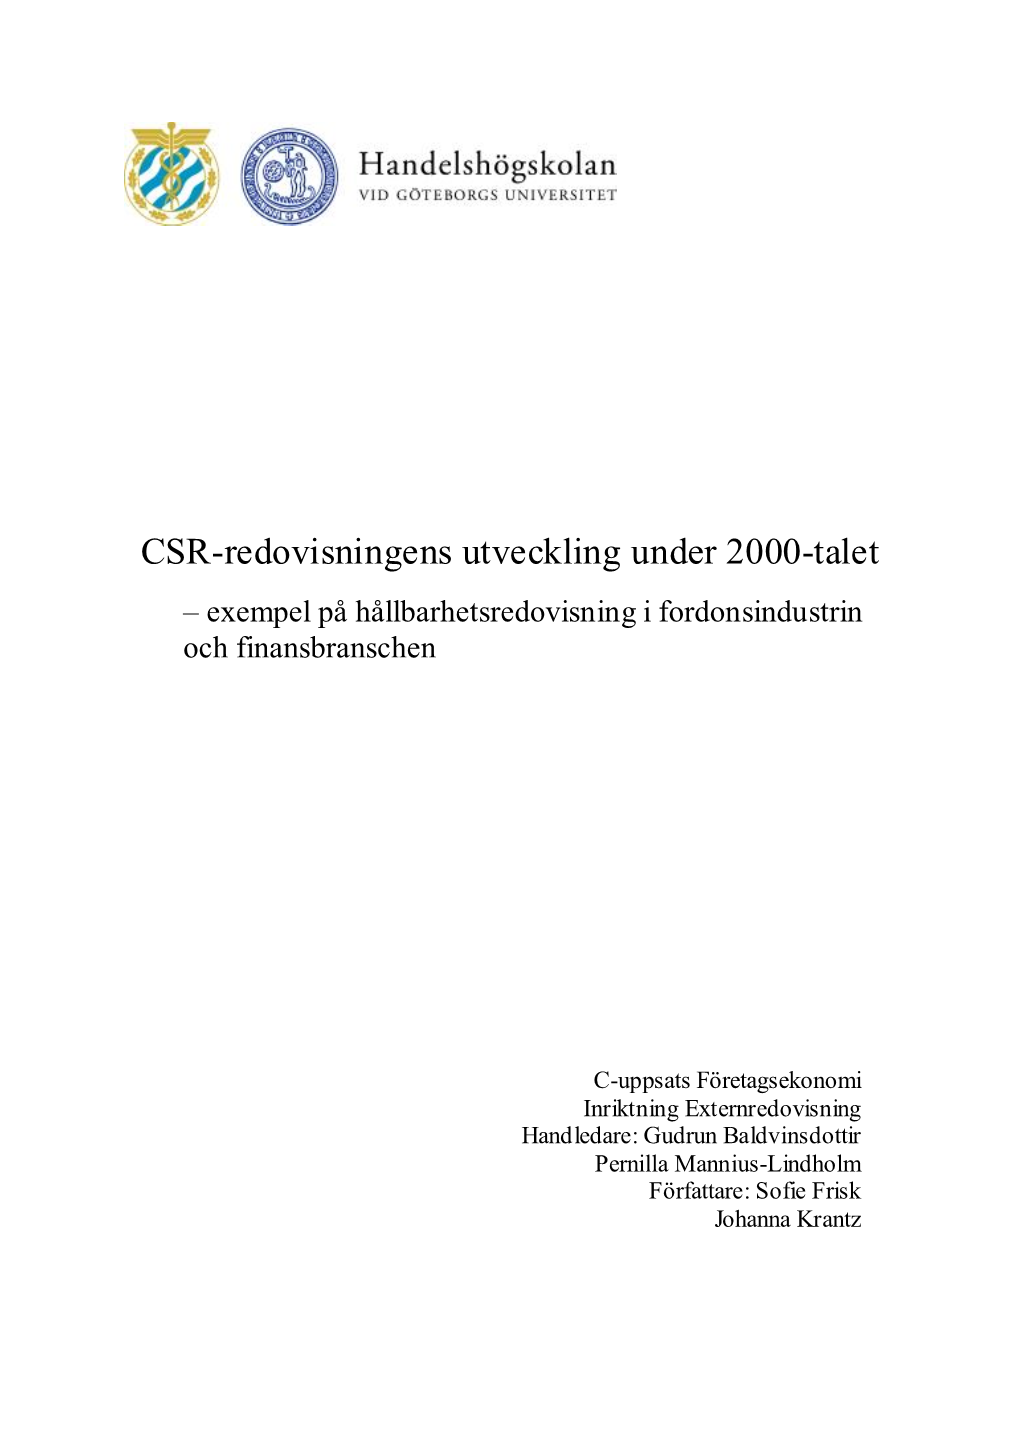 CSR-Redovisningens Utveckling Under 2000-Talet – Exempel På Hållbarhetsredovisning I Fordonsindustrin Och Finansbranschen